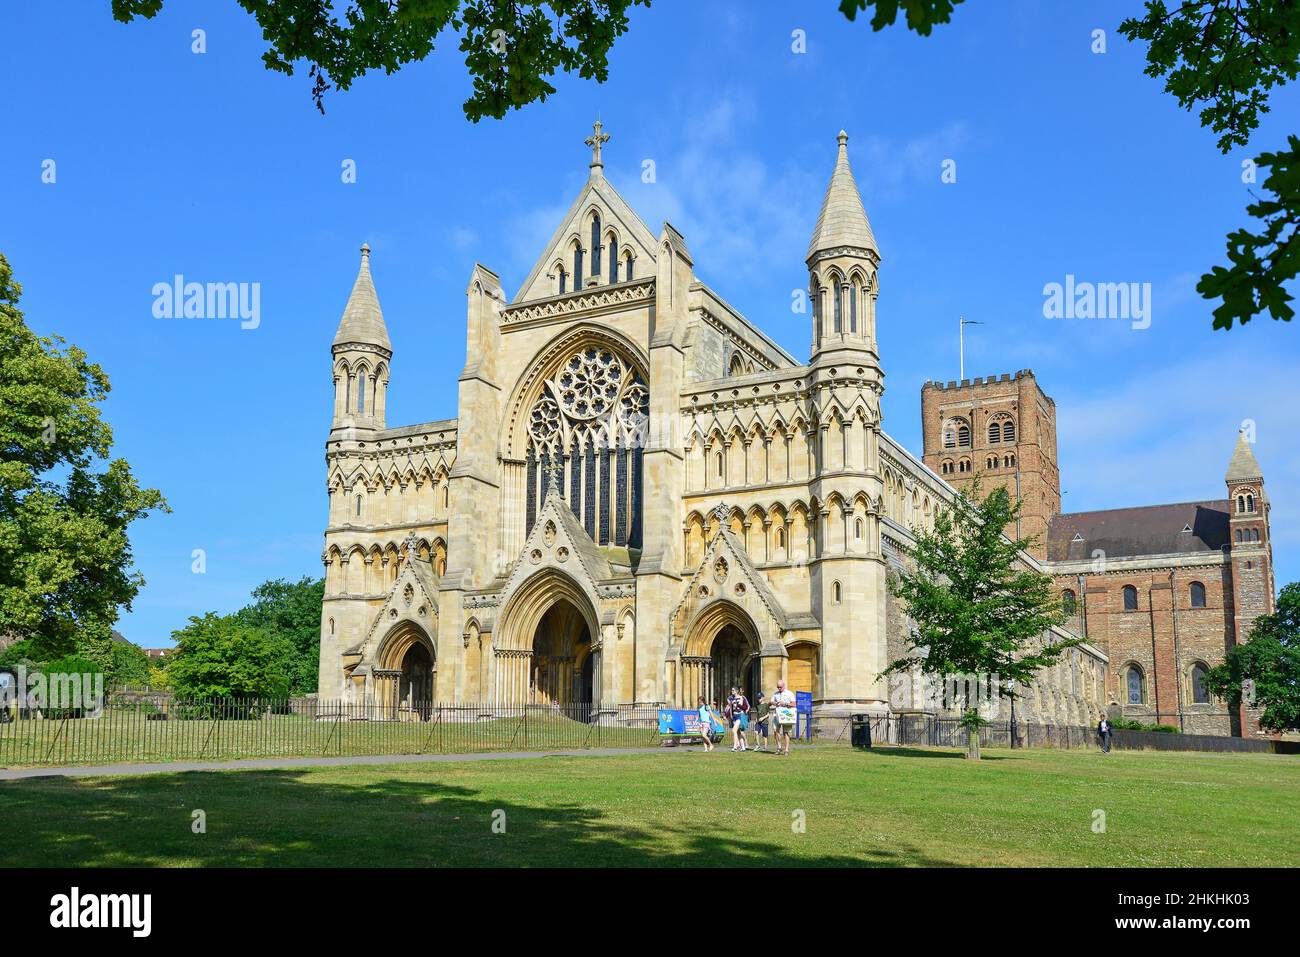 St Albans Kathedrale von Vintry Garten, St. Albans, Hertfordshire, England, Vereinigtes Königreich Stockfoto